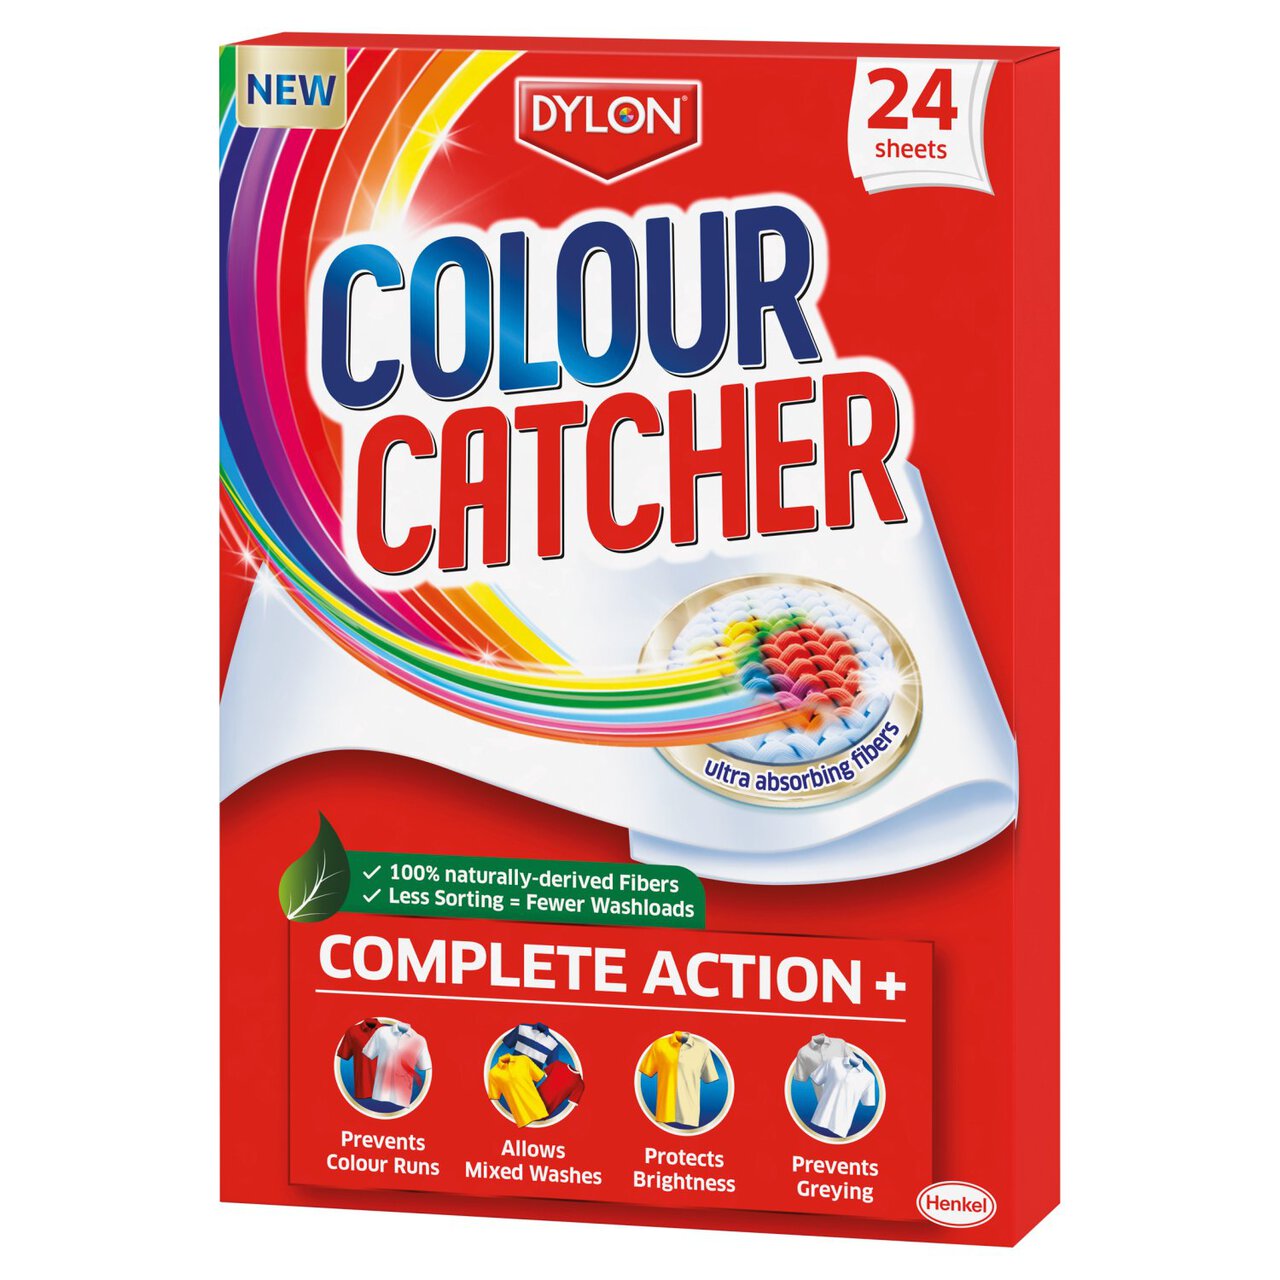 dylon-colour-catcher-sheets-laundry-sheets-24-per-pack-zoom